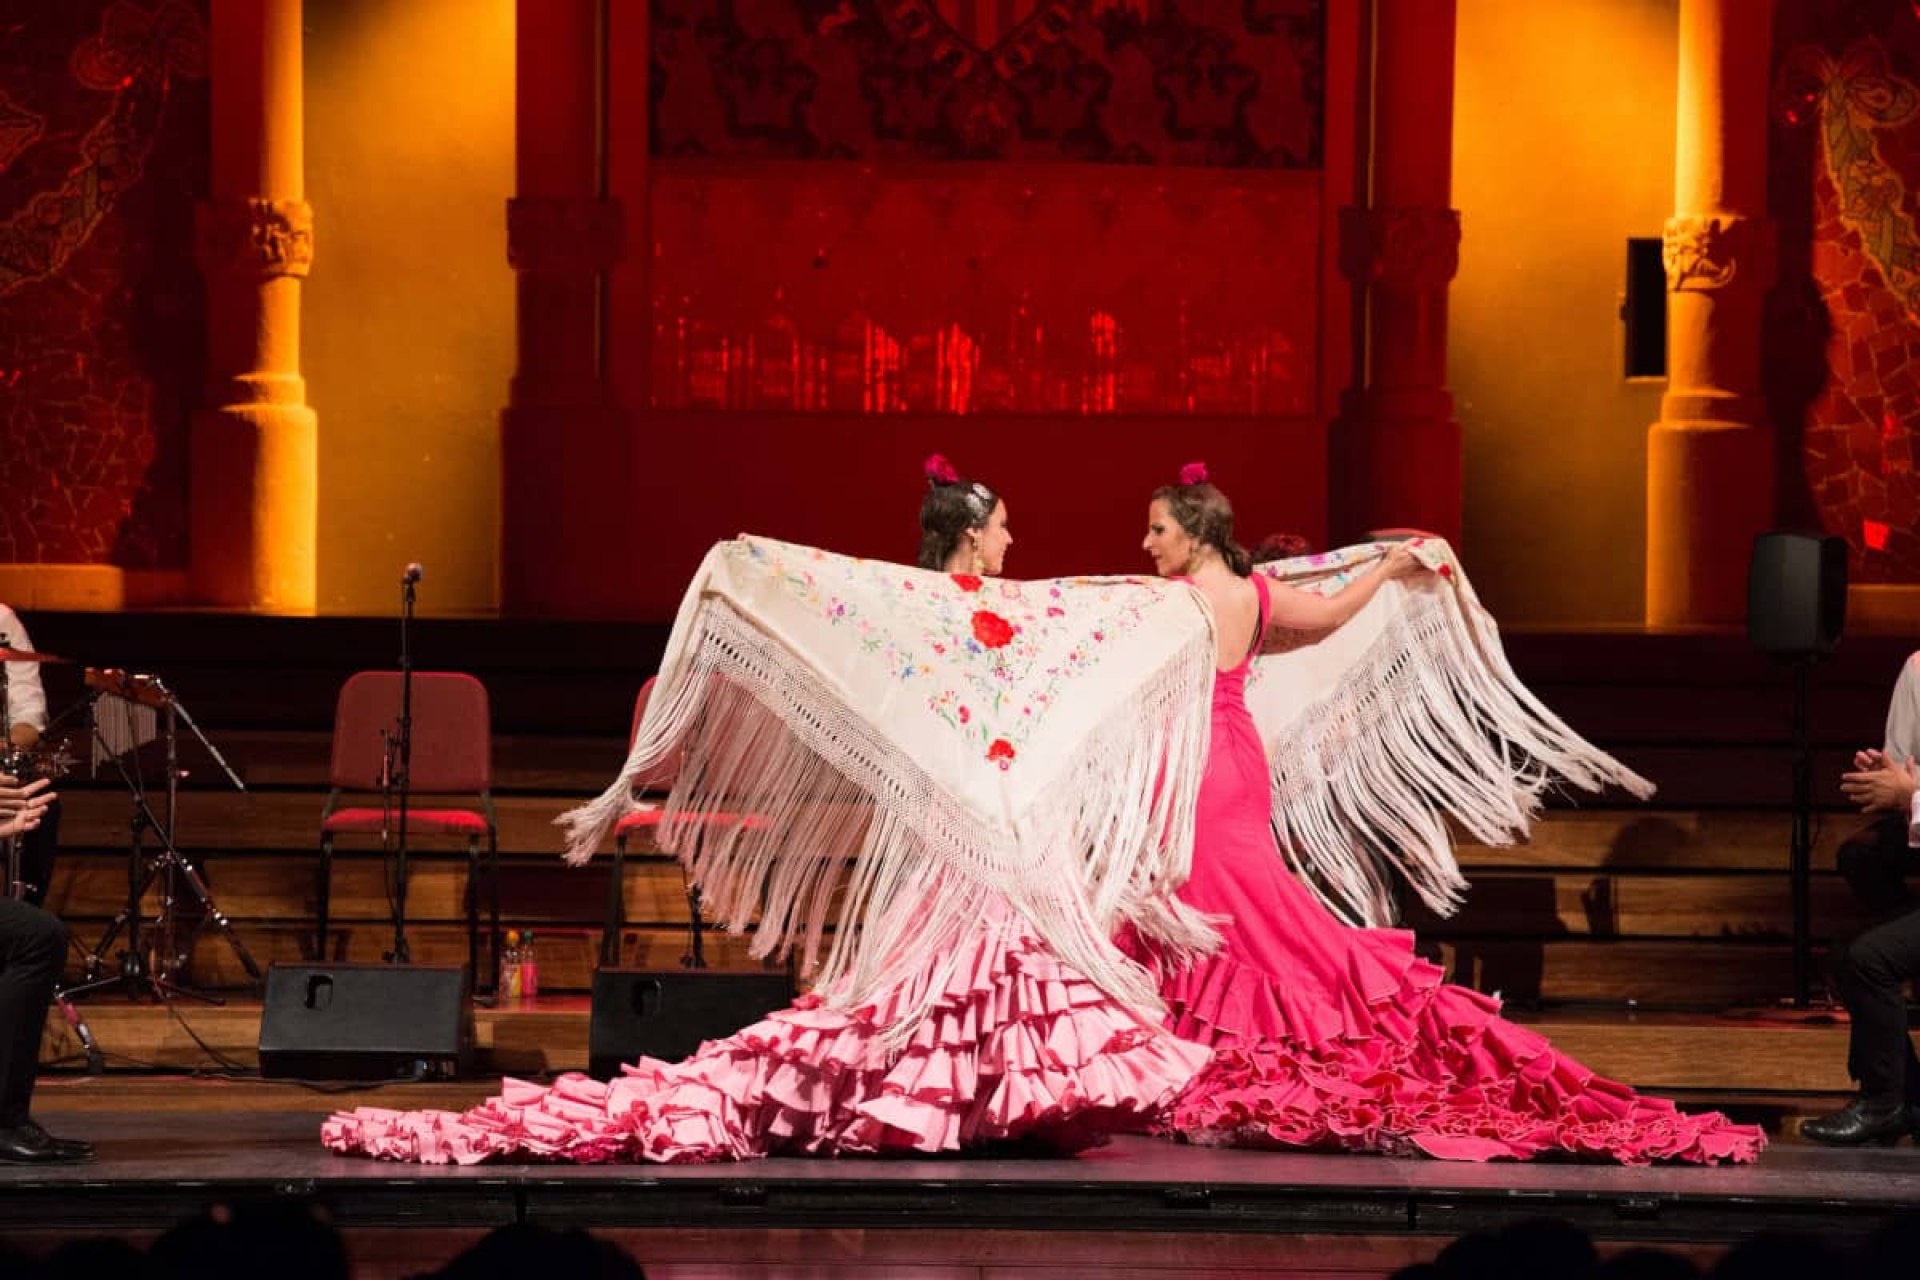 Gran Gala Flamenco at Petit Palau